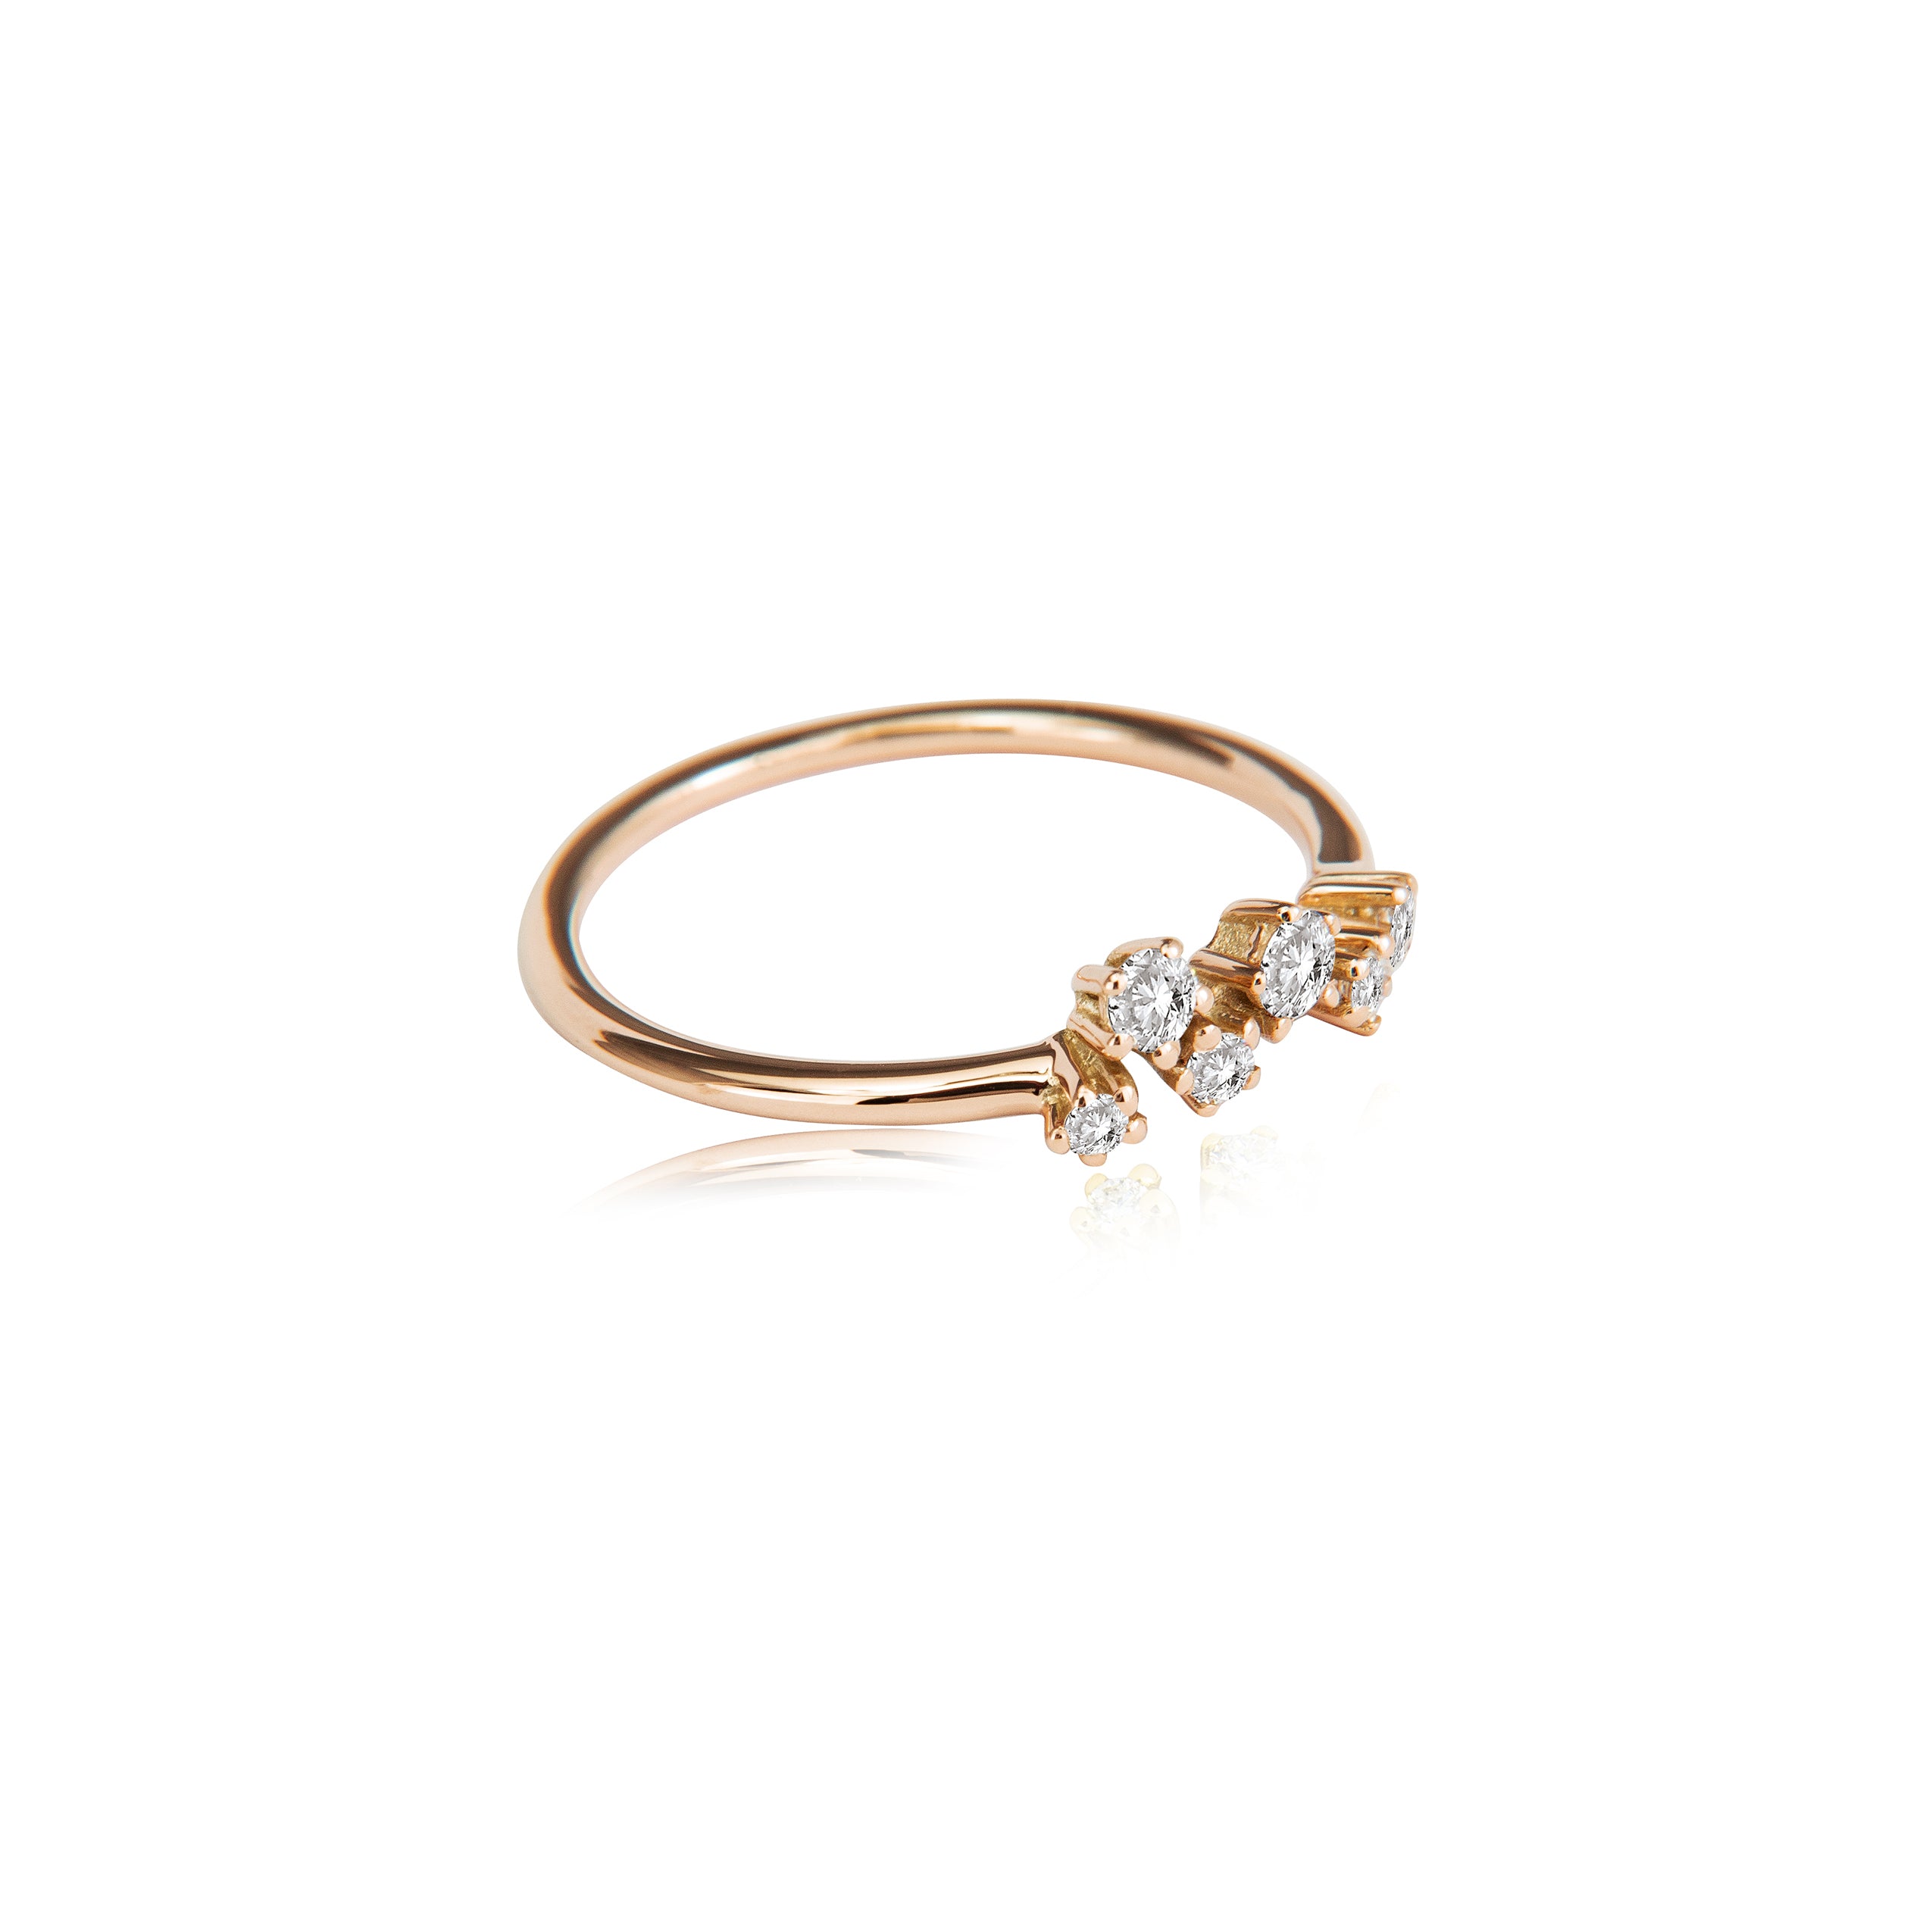 Fonkelende ring "medium" in 585/- goud met 6 diamanten